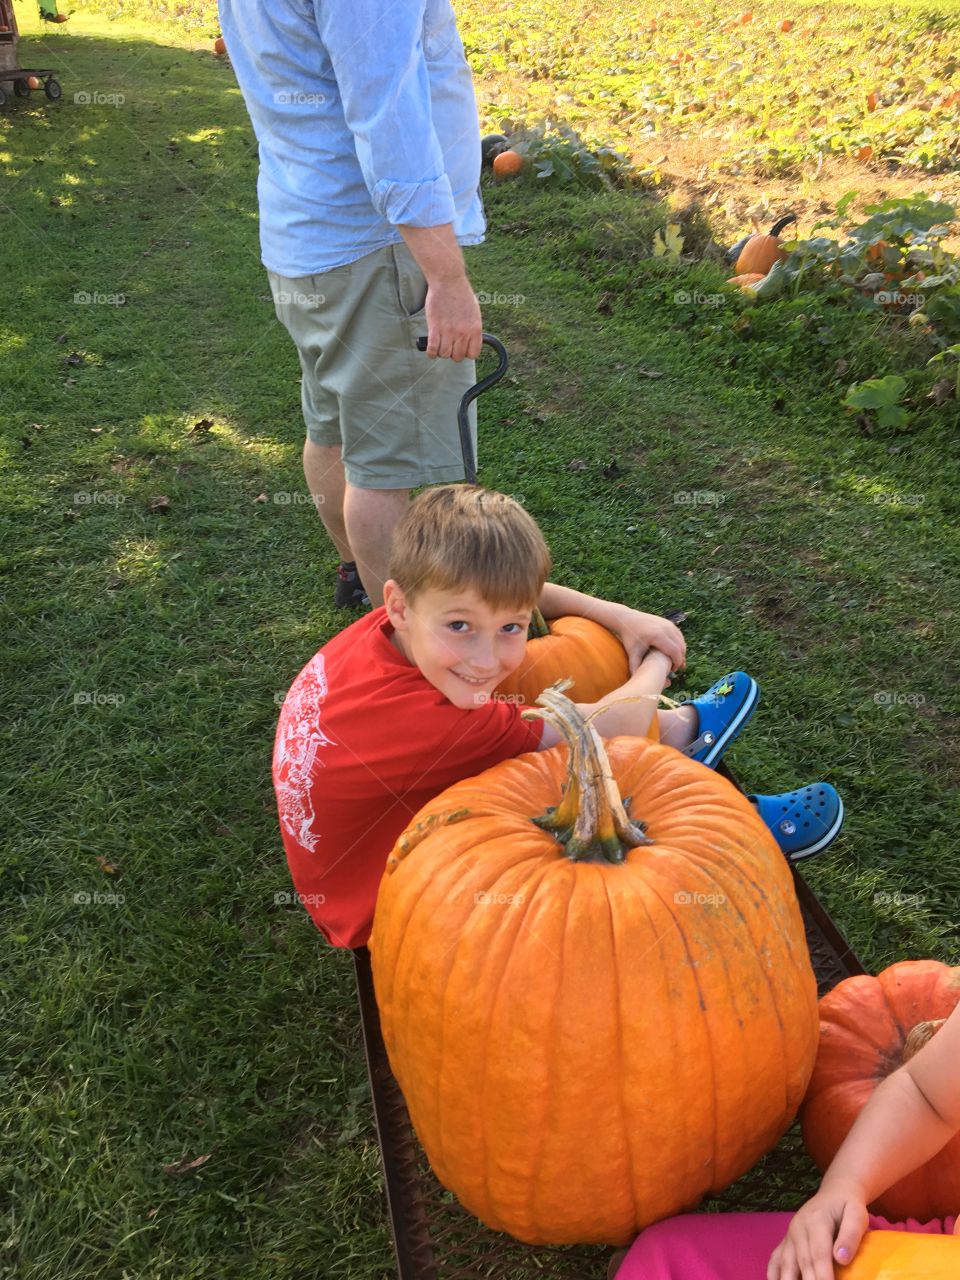 Pumpkin kids Halloween